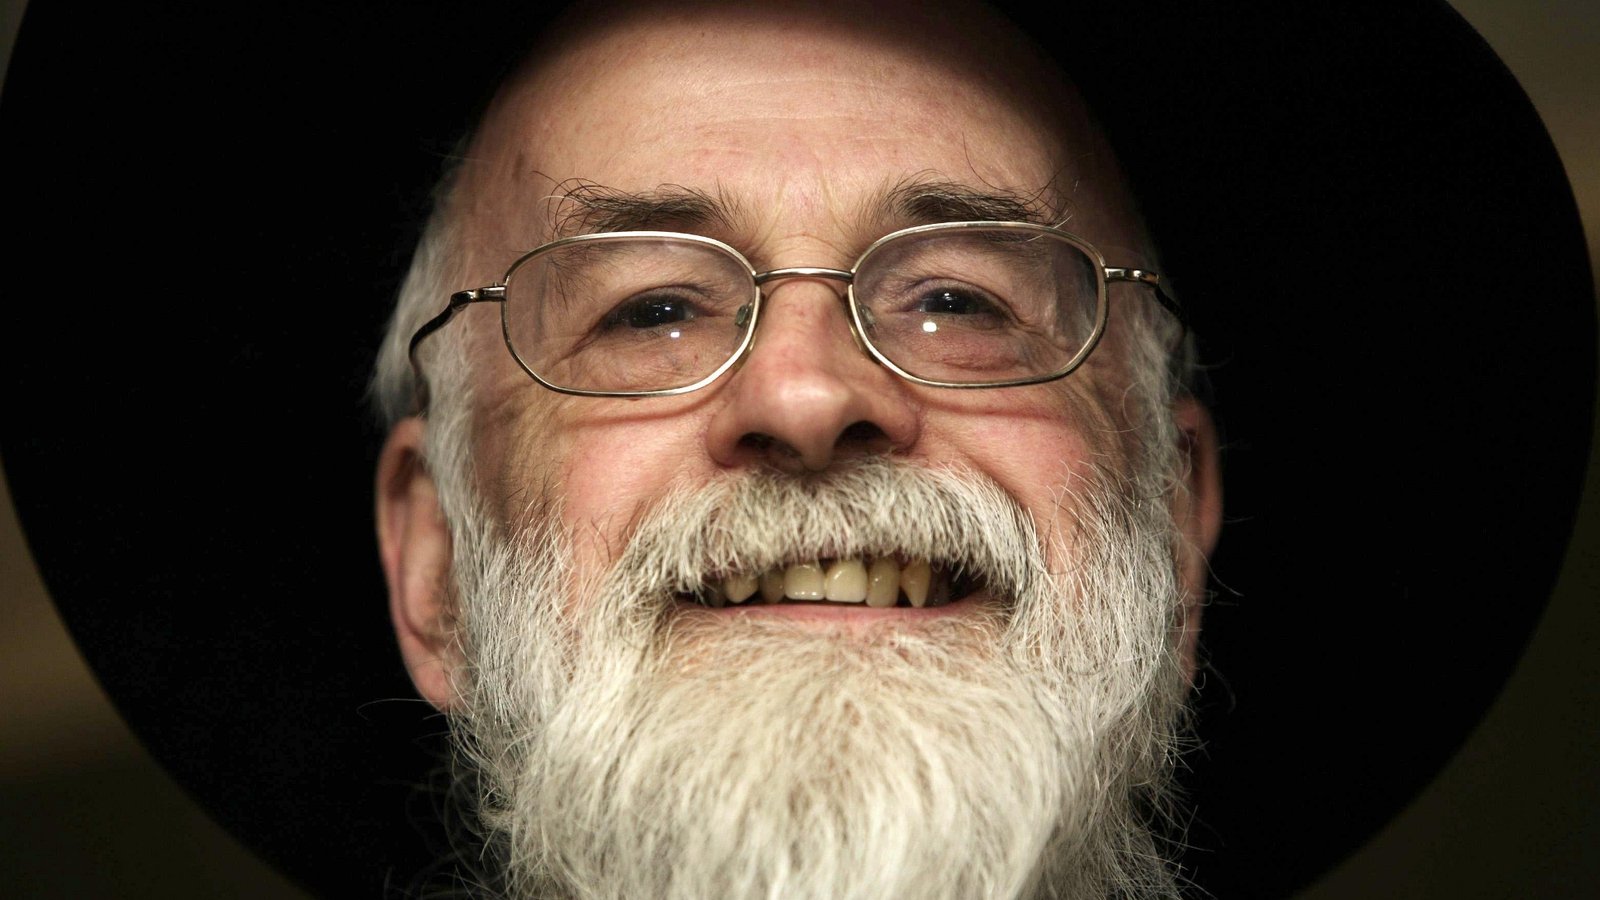 Best-selling fantasy author Terry Pratchett dies